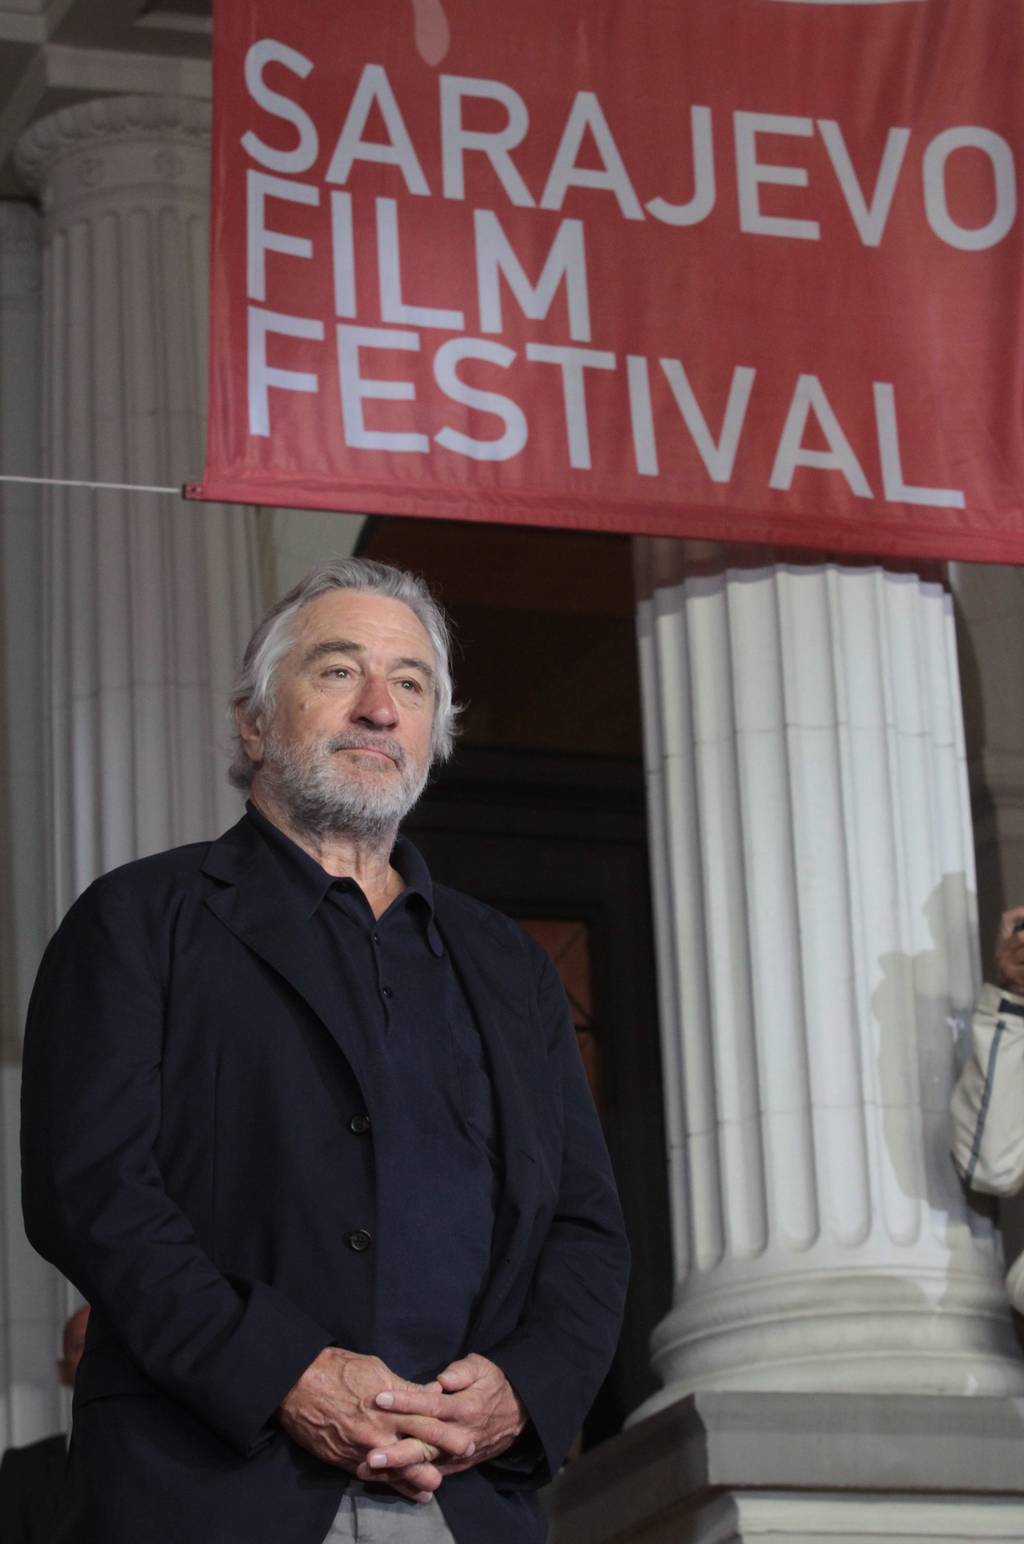 Invitado. El reconocido actor Robert De Niro inauguró el Festival de Cine de Sarajevo, con la presentación de una versión restaurada de su éxito cinematográfico Taxi Driver.